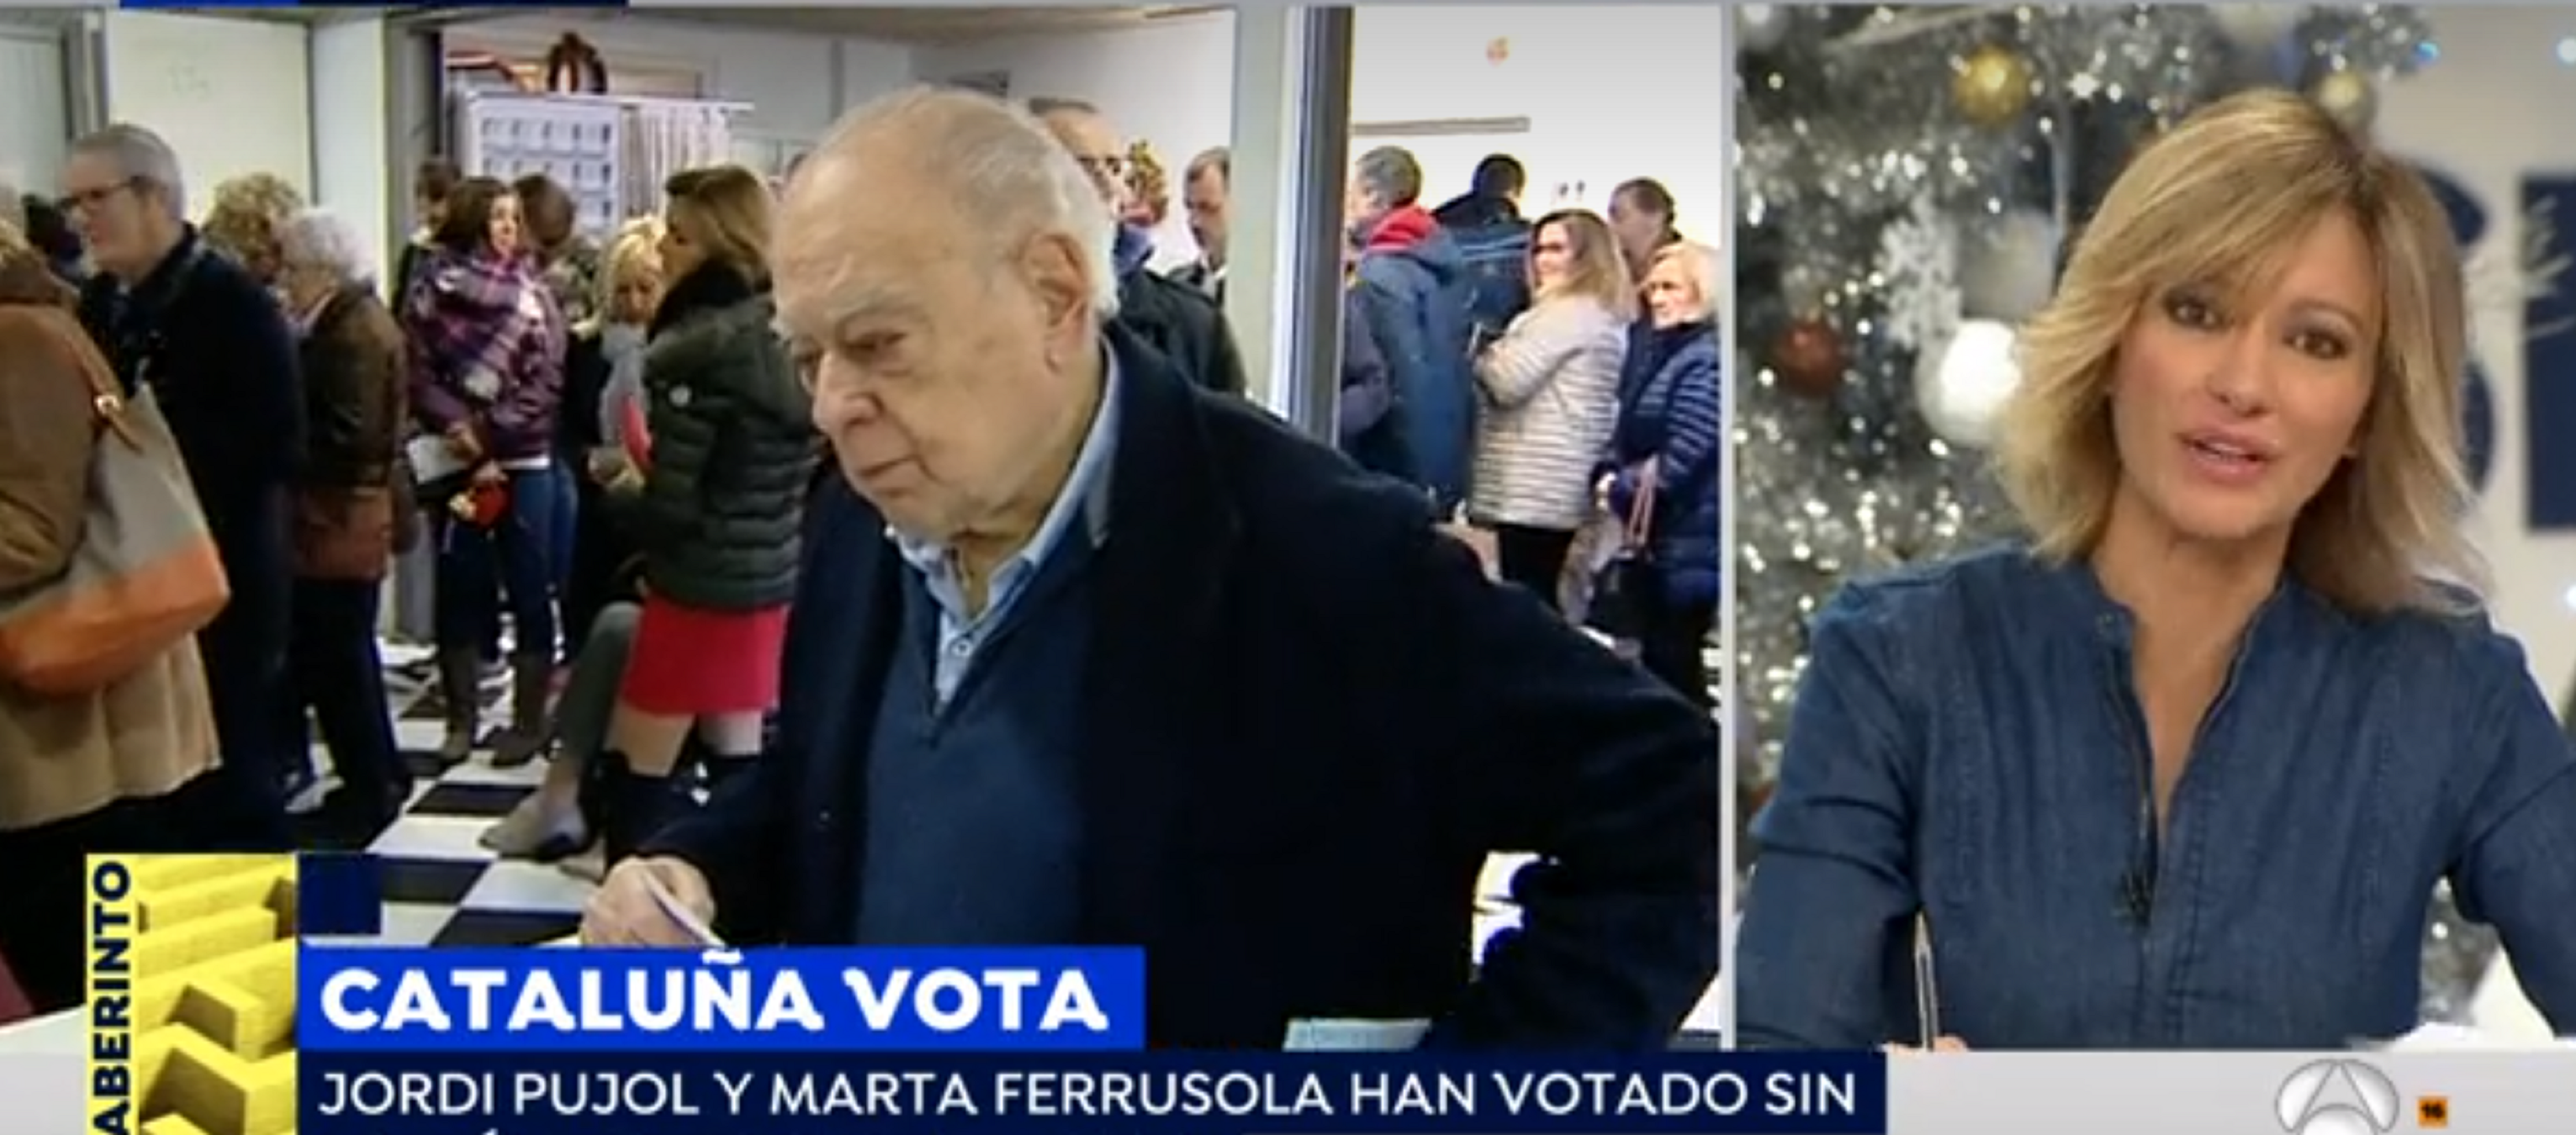 Jordi Pujol i Marta Ferrusola han votat sense cap símbol groc